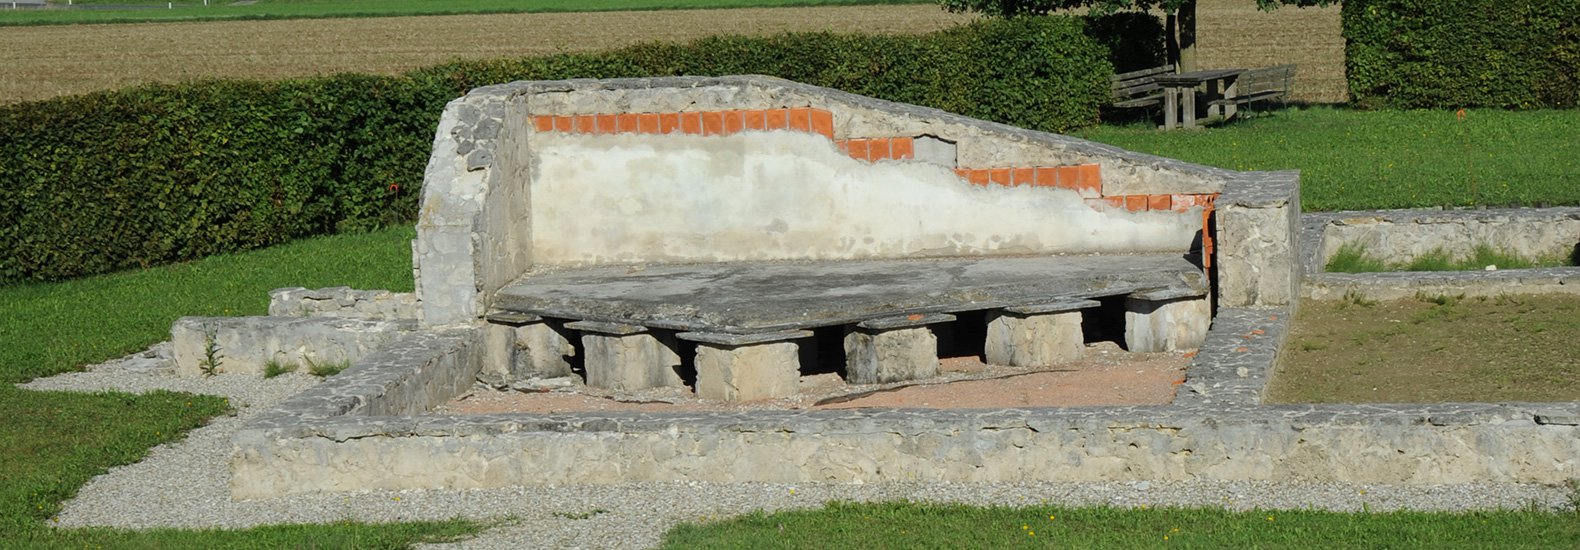 Römer Ausgrabungsstätte "villa rustica" Altheim-Weirading